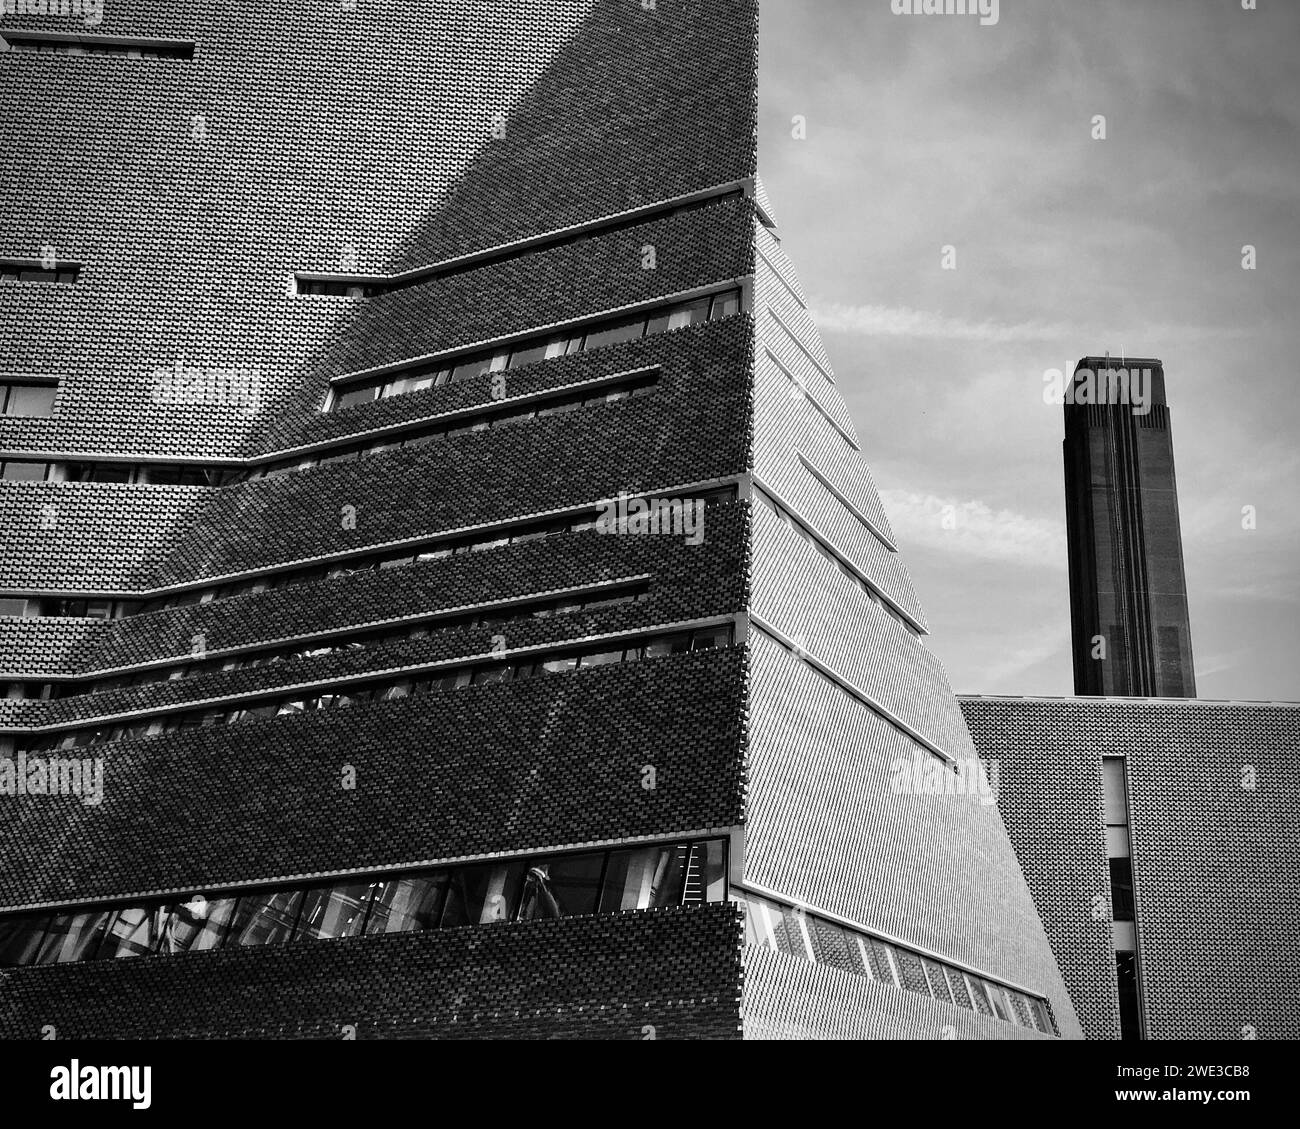 Die neue und alte Architektur der Tate Modern mit dem großen alten Schornstein der Turbinenhalle einschließlich der neuen Gebäudeerweiterung. Stockfoto